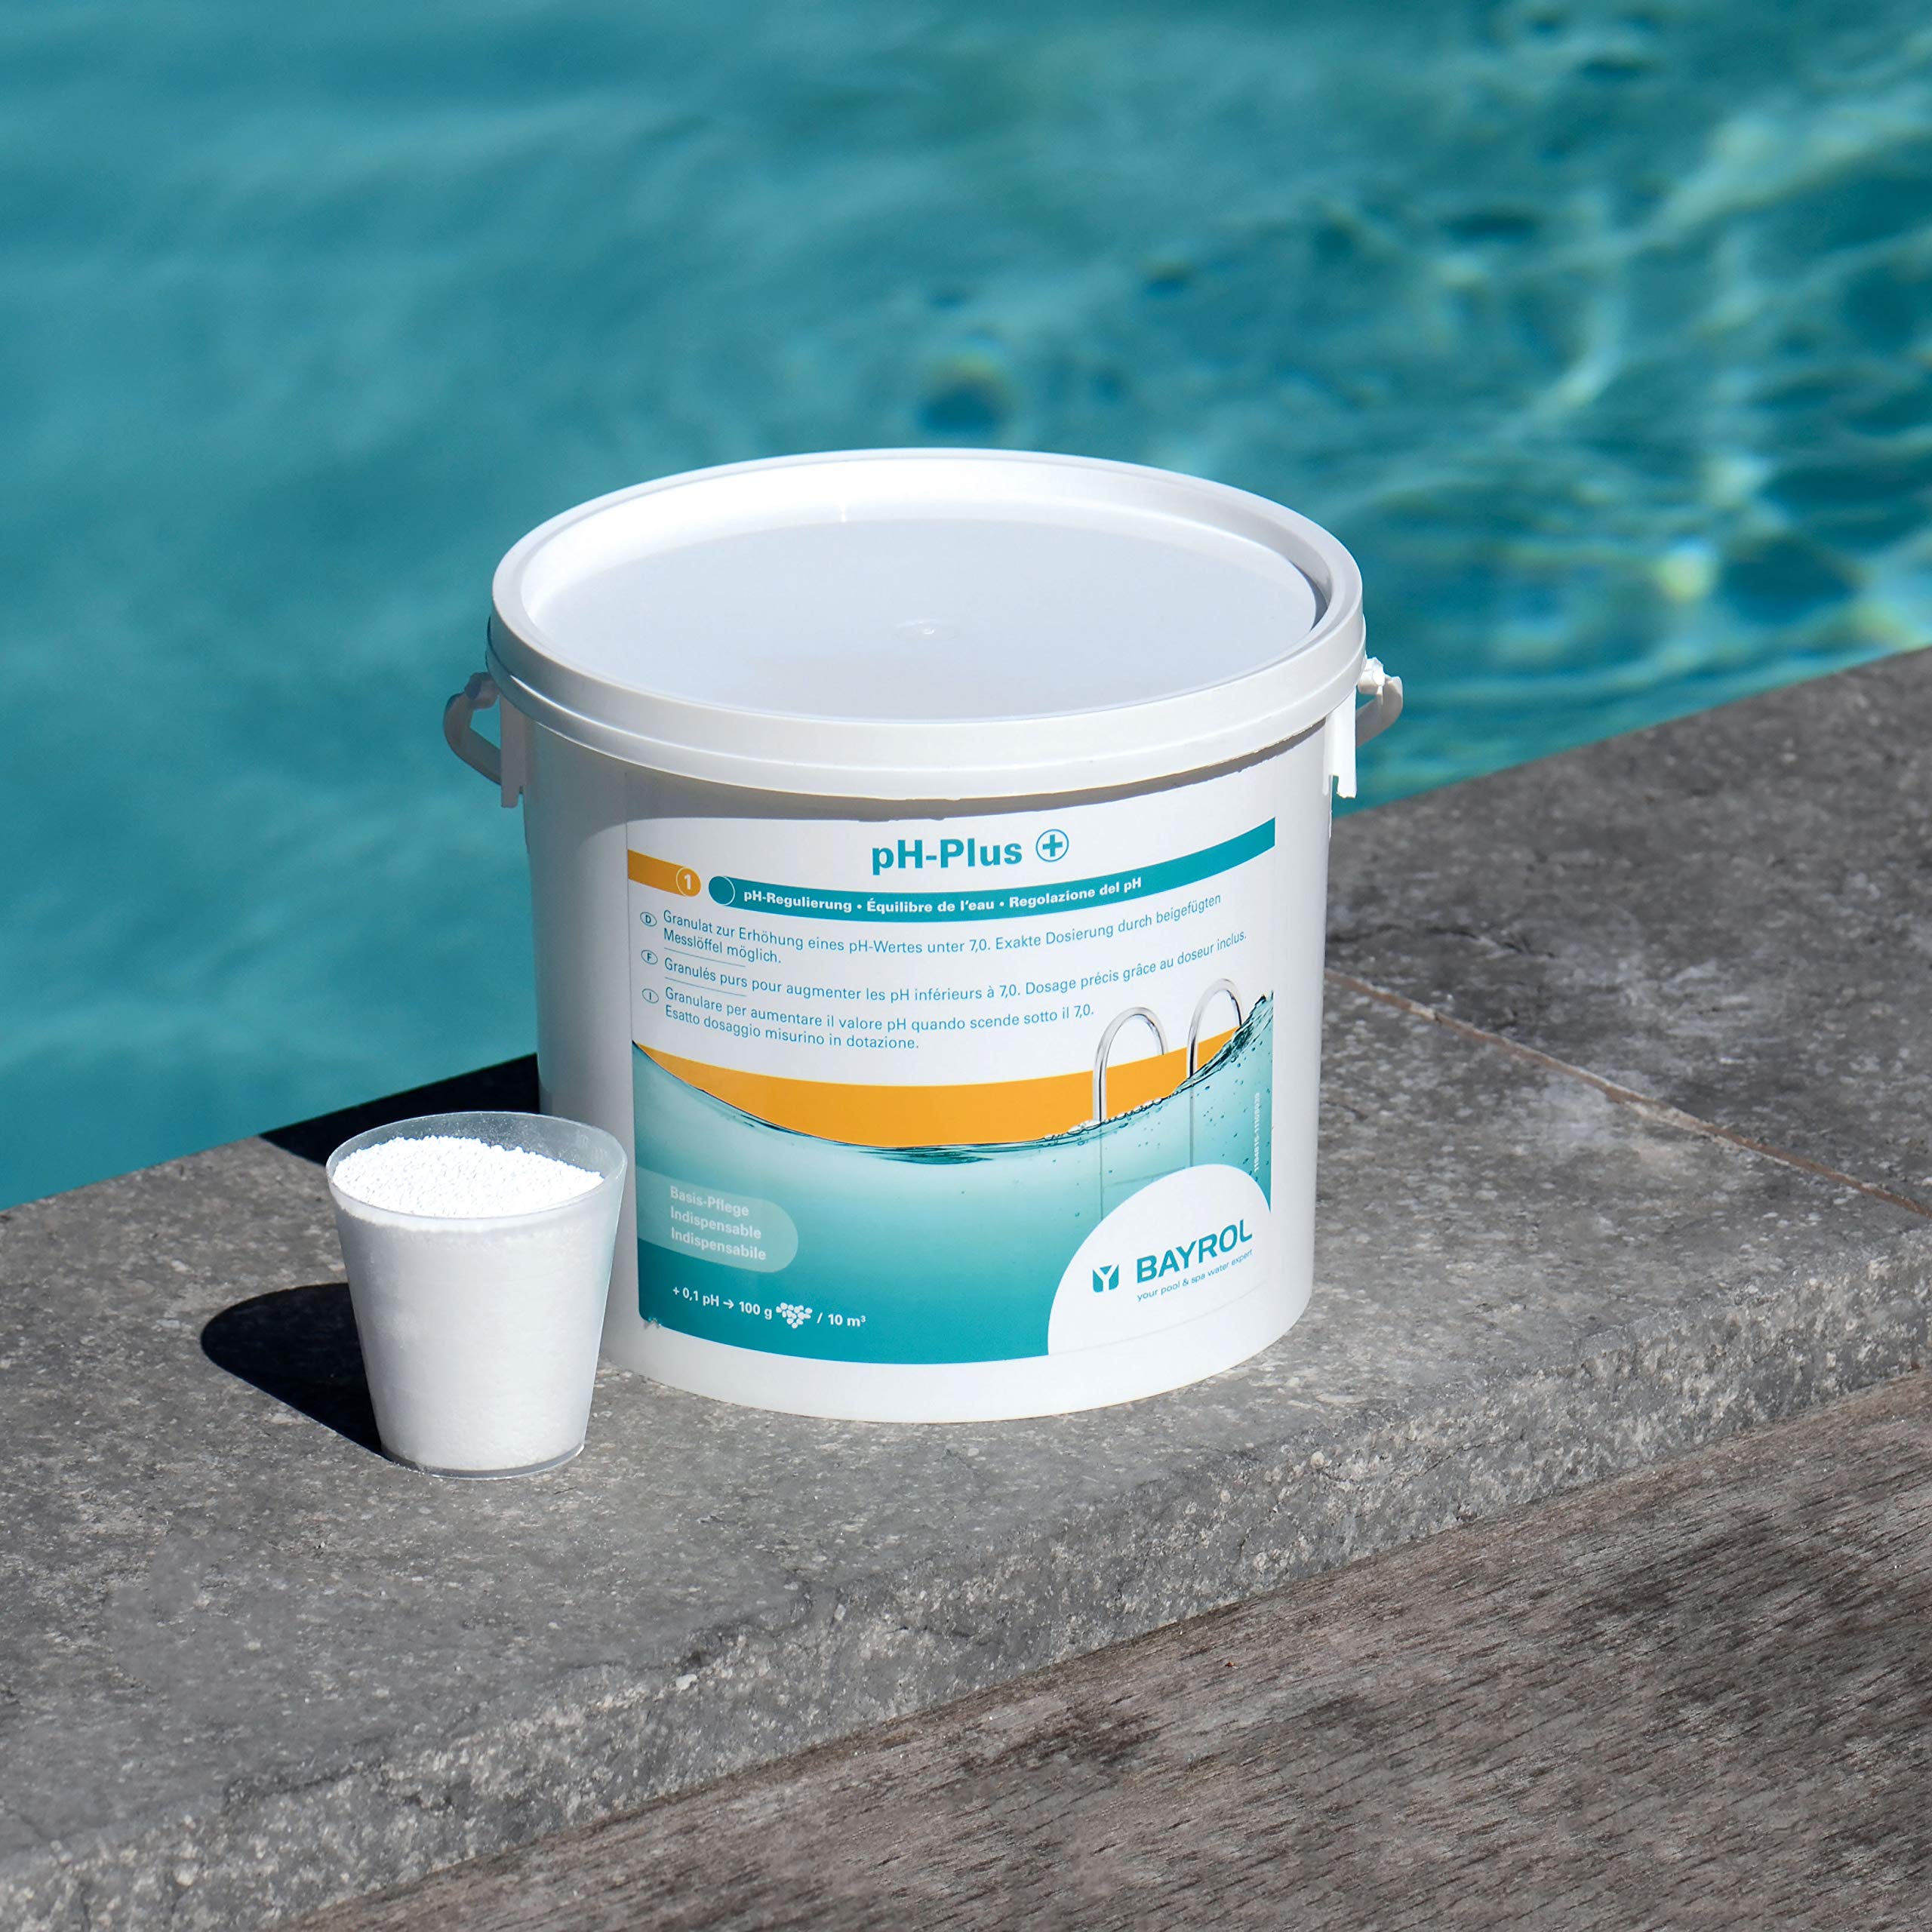 BAYROL pH-Plus 12kg - pH Heber Granulat für Pool - pH Wert Heber - Schnelle Anhebung des pH-Werts - enthält Dosierbecher - pH Plus Pool - pH Wert im Pool erhöhen